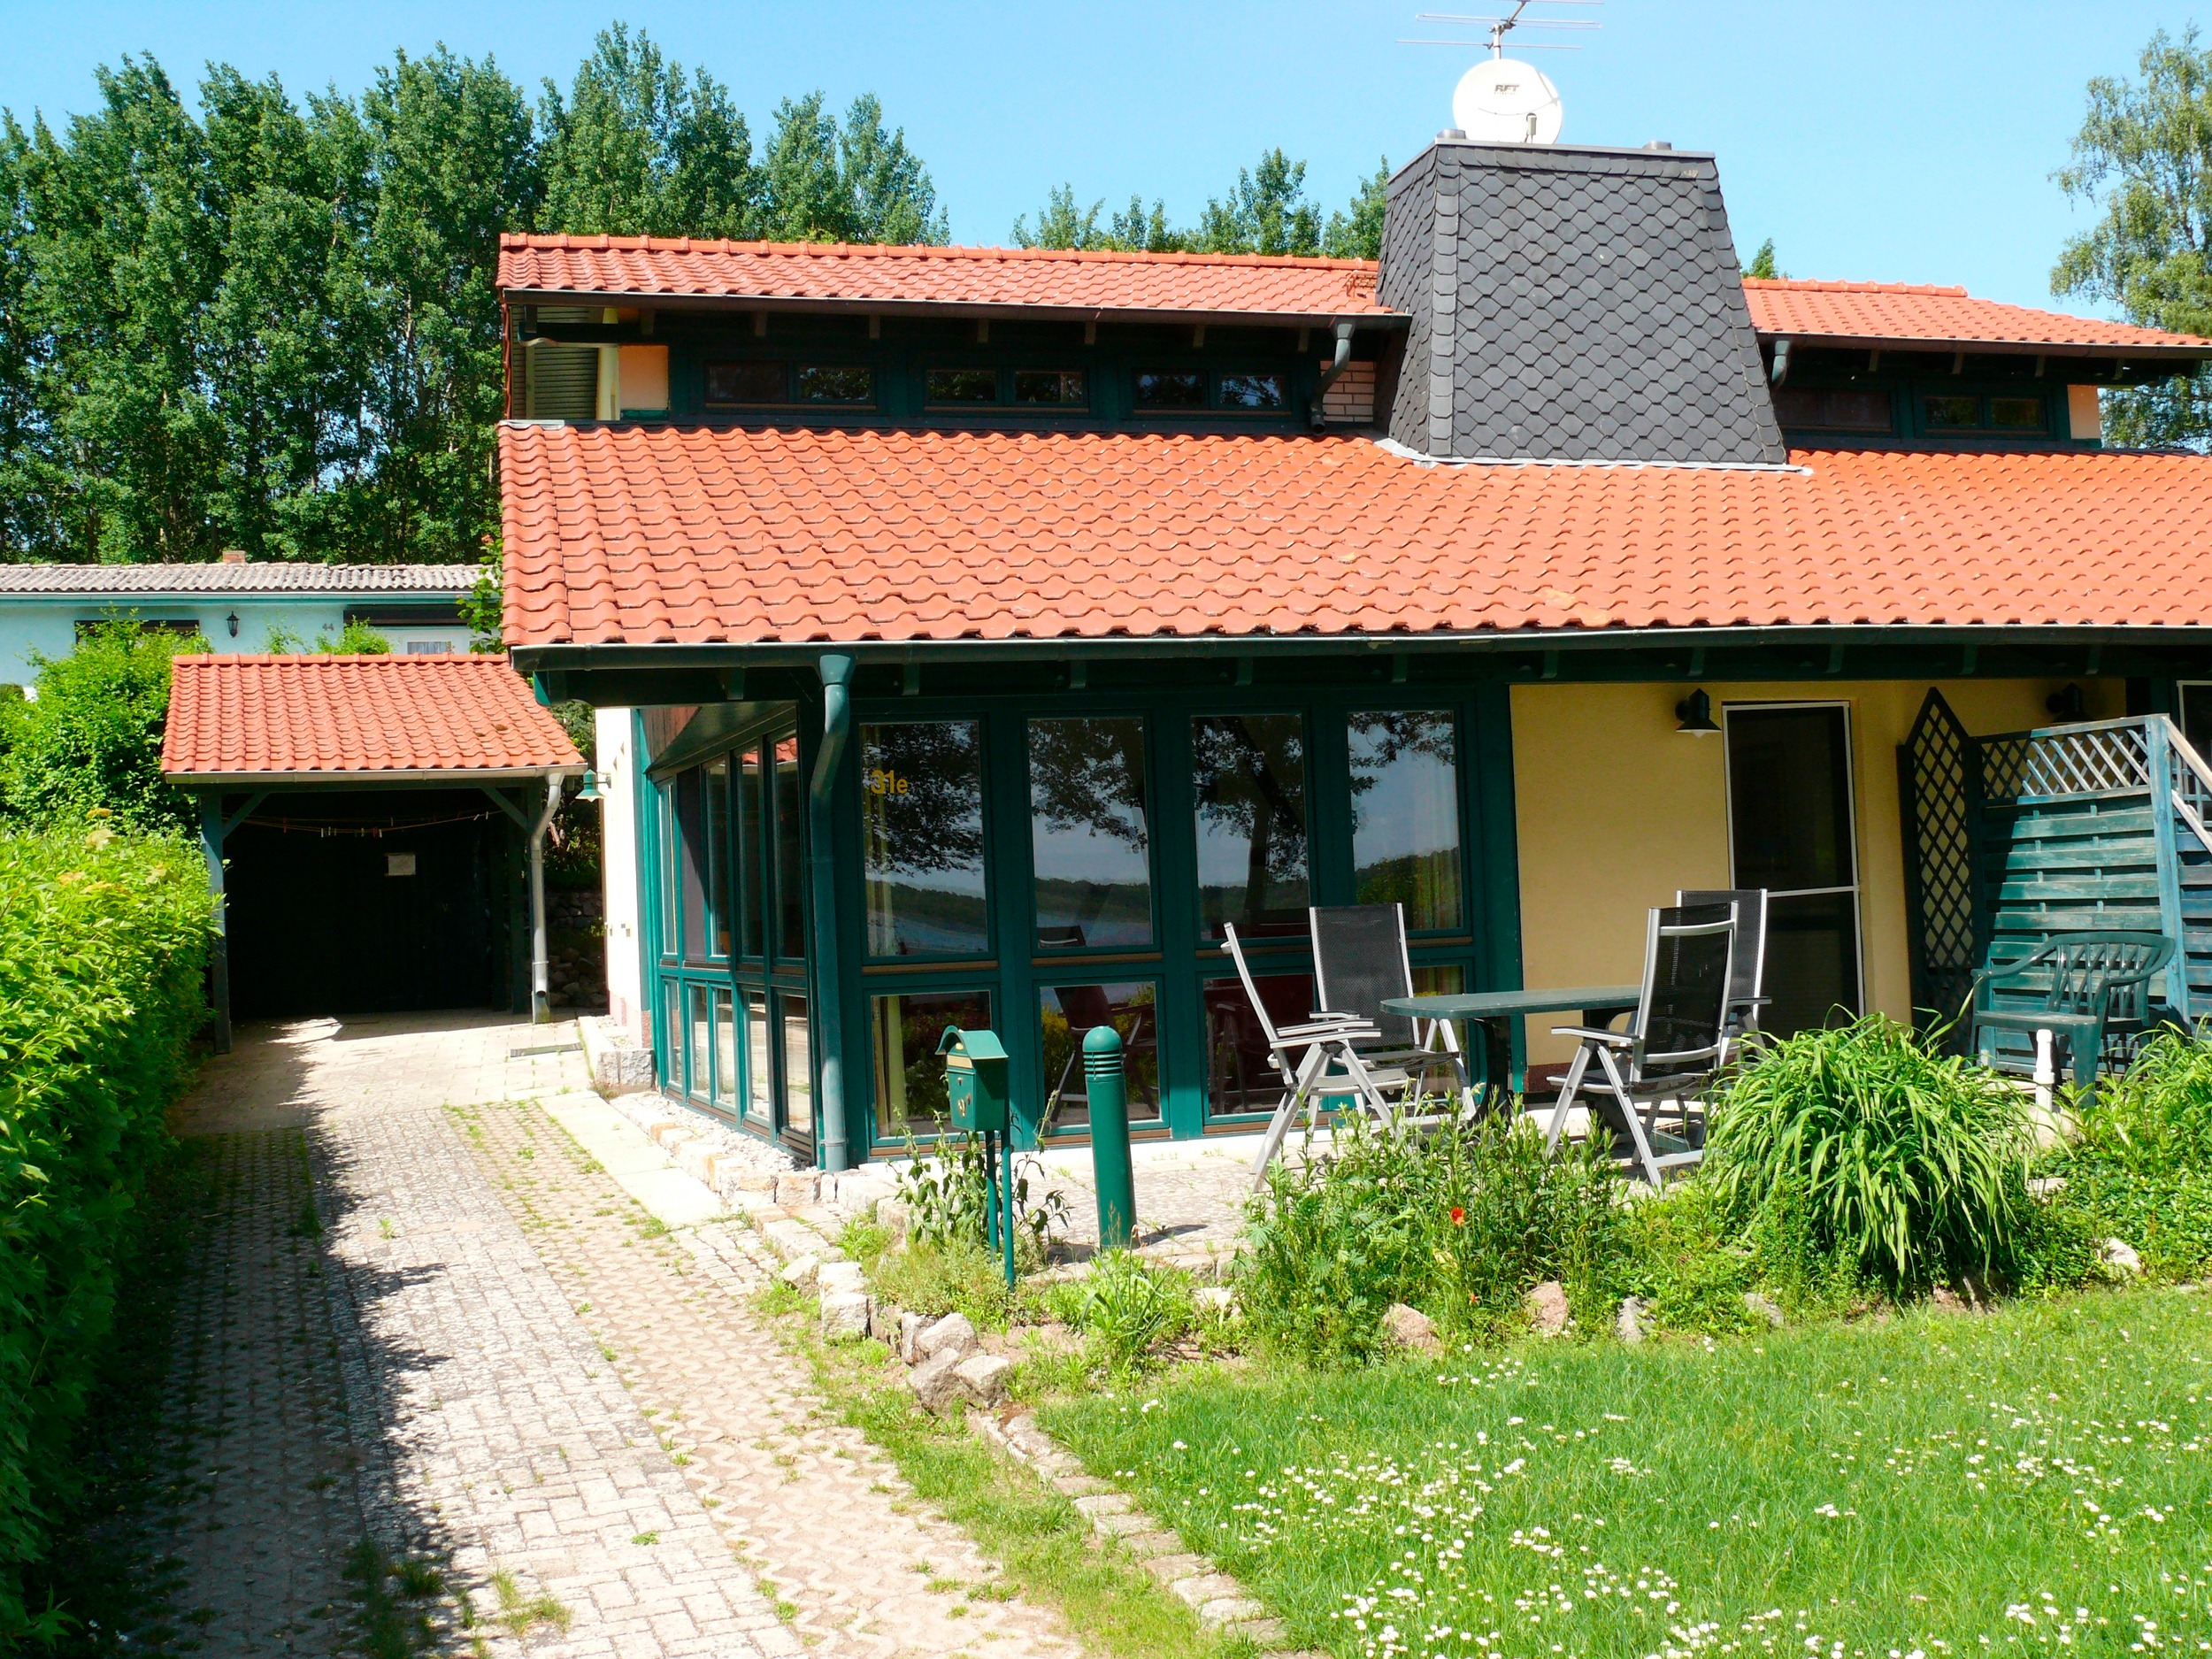 Haus Kerstin am Jabeler See Ferienhaus in Mecklenburg Vorpommern